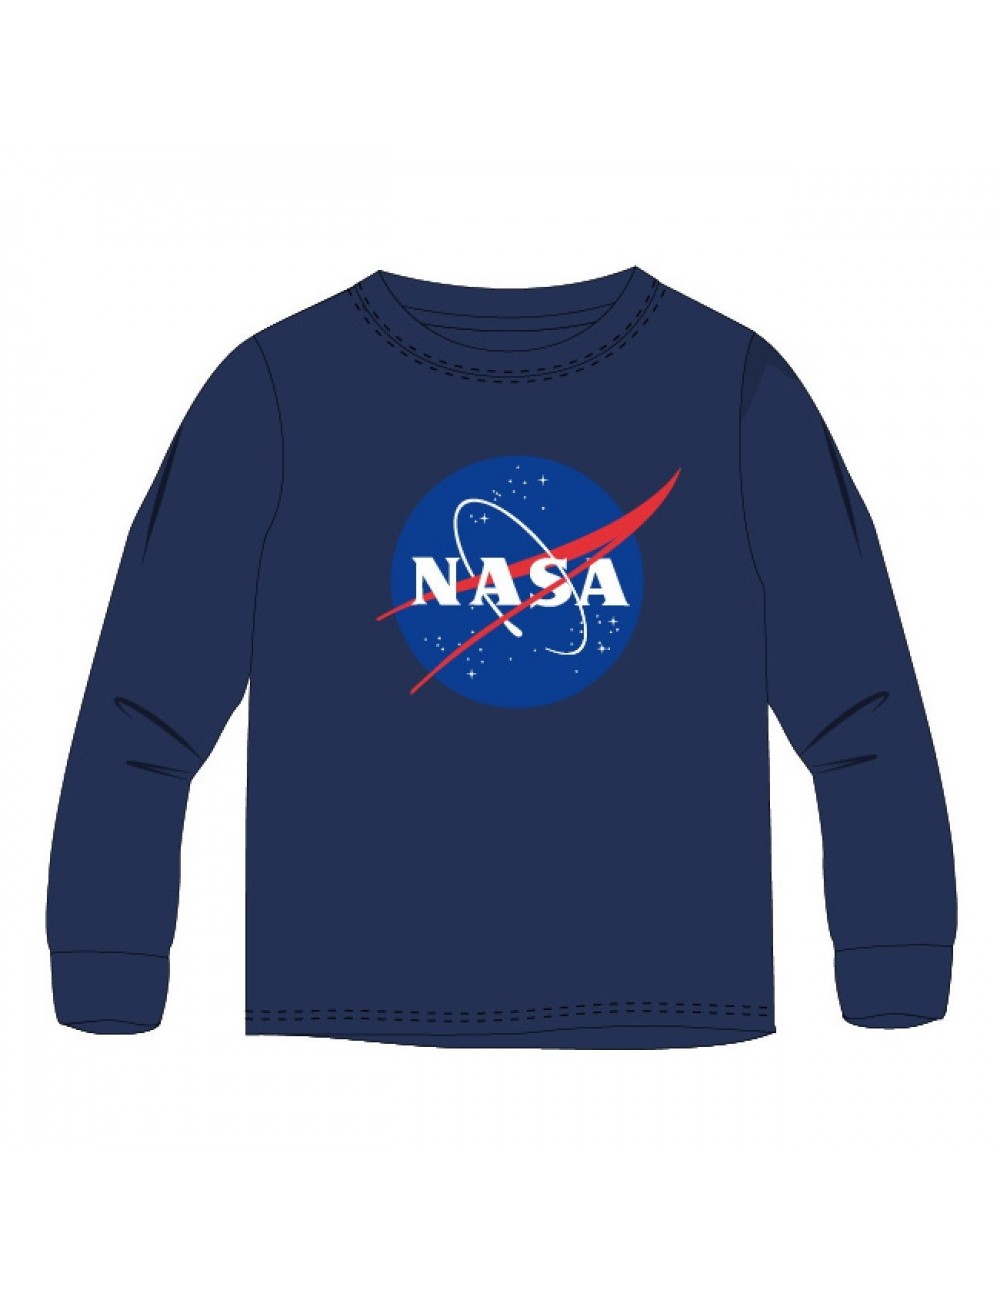 Bluza NASA, bleumarin, baieti 9-13 ani